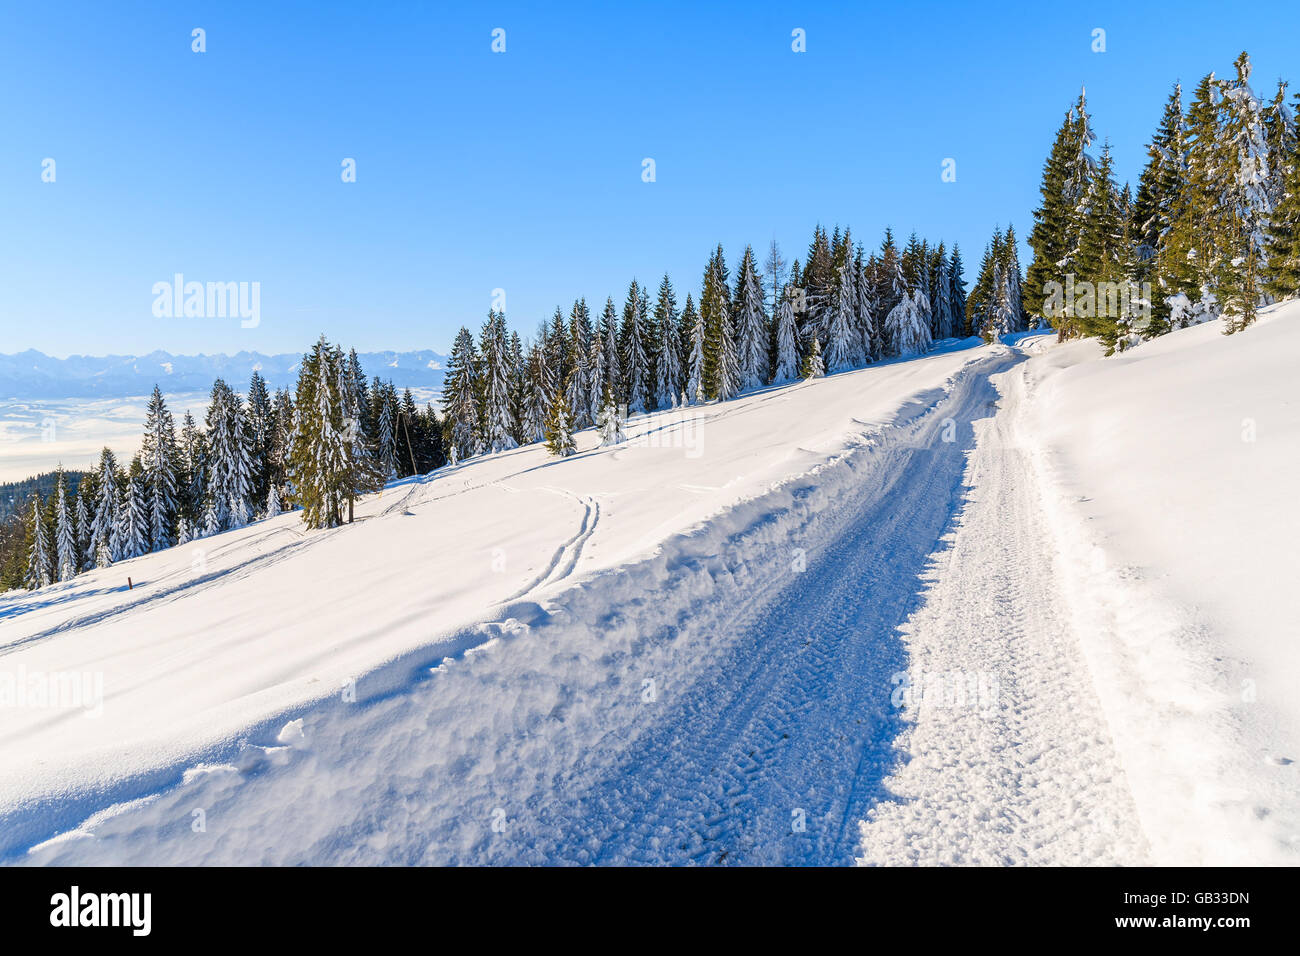 La route d'hiver dans les montagnes Gorce après les chutes de neige fraîche, Pologne Banque D'Images